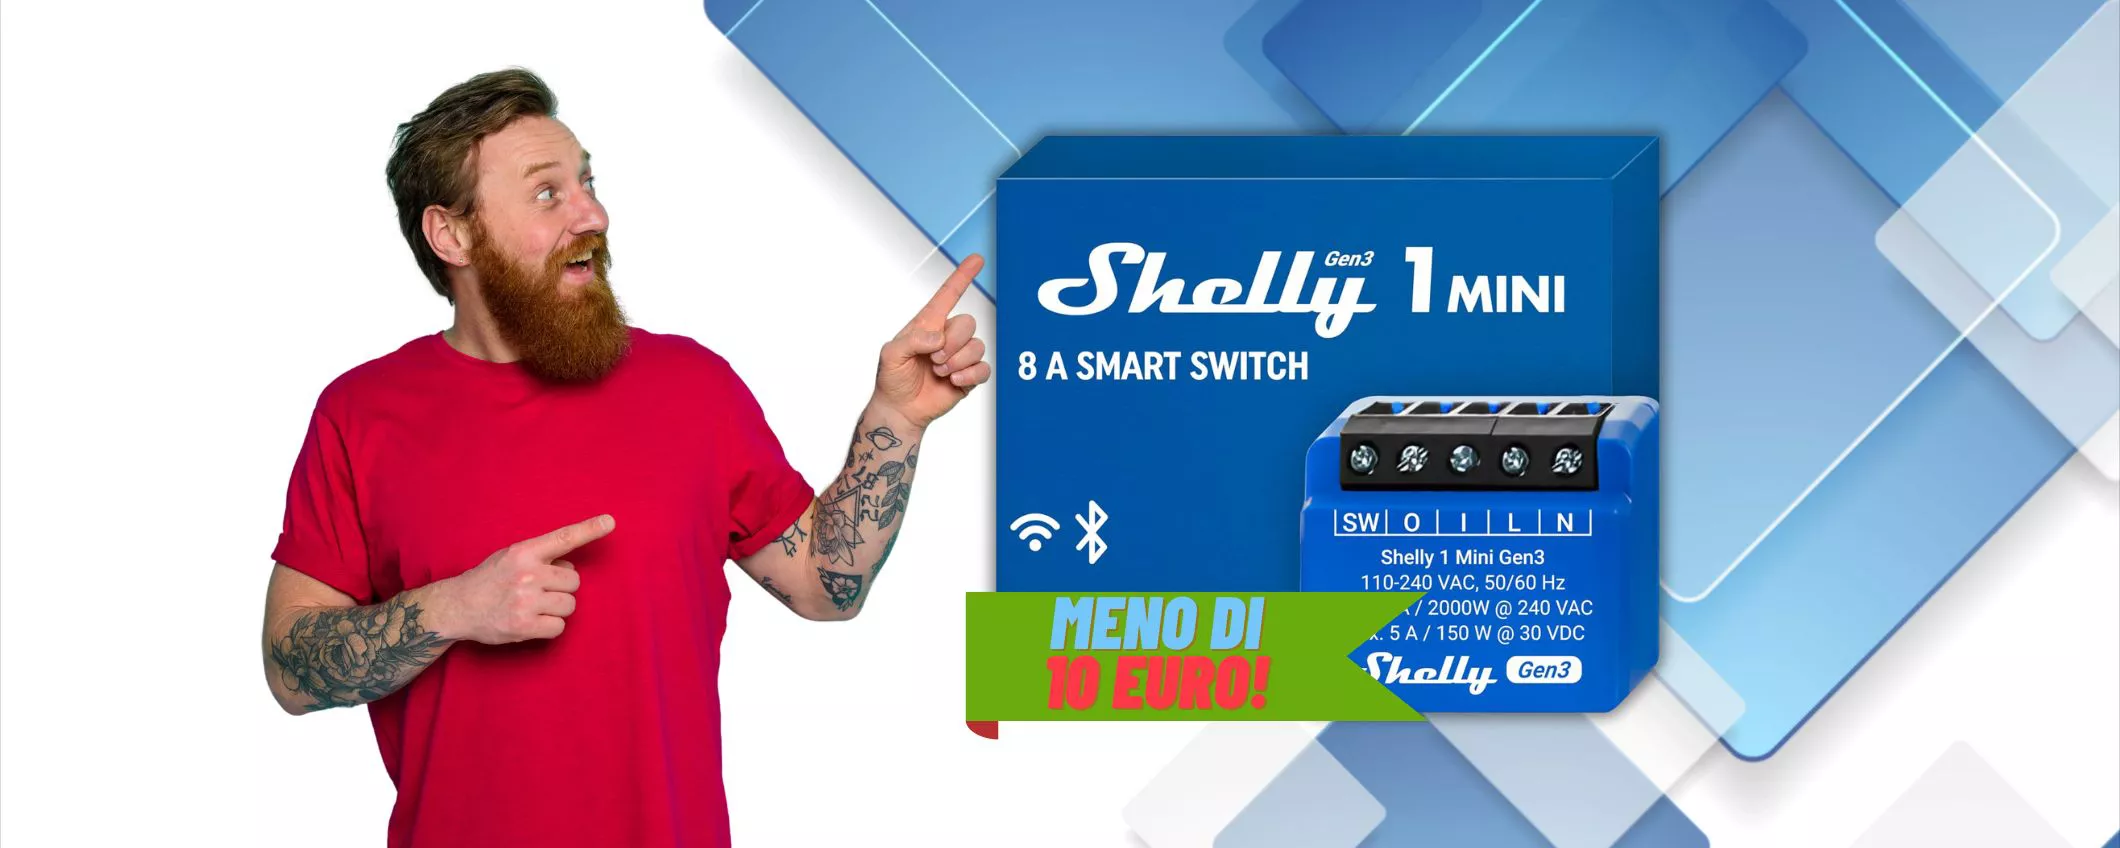 Shelly Plus 1 Mini, con MENO di 10€ la tua casa diventa SMART